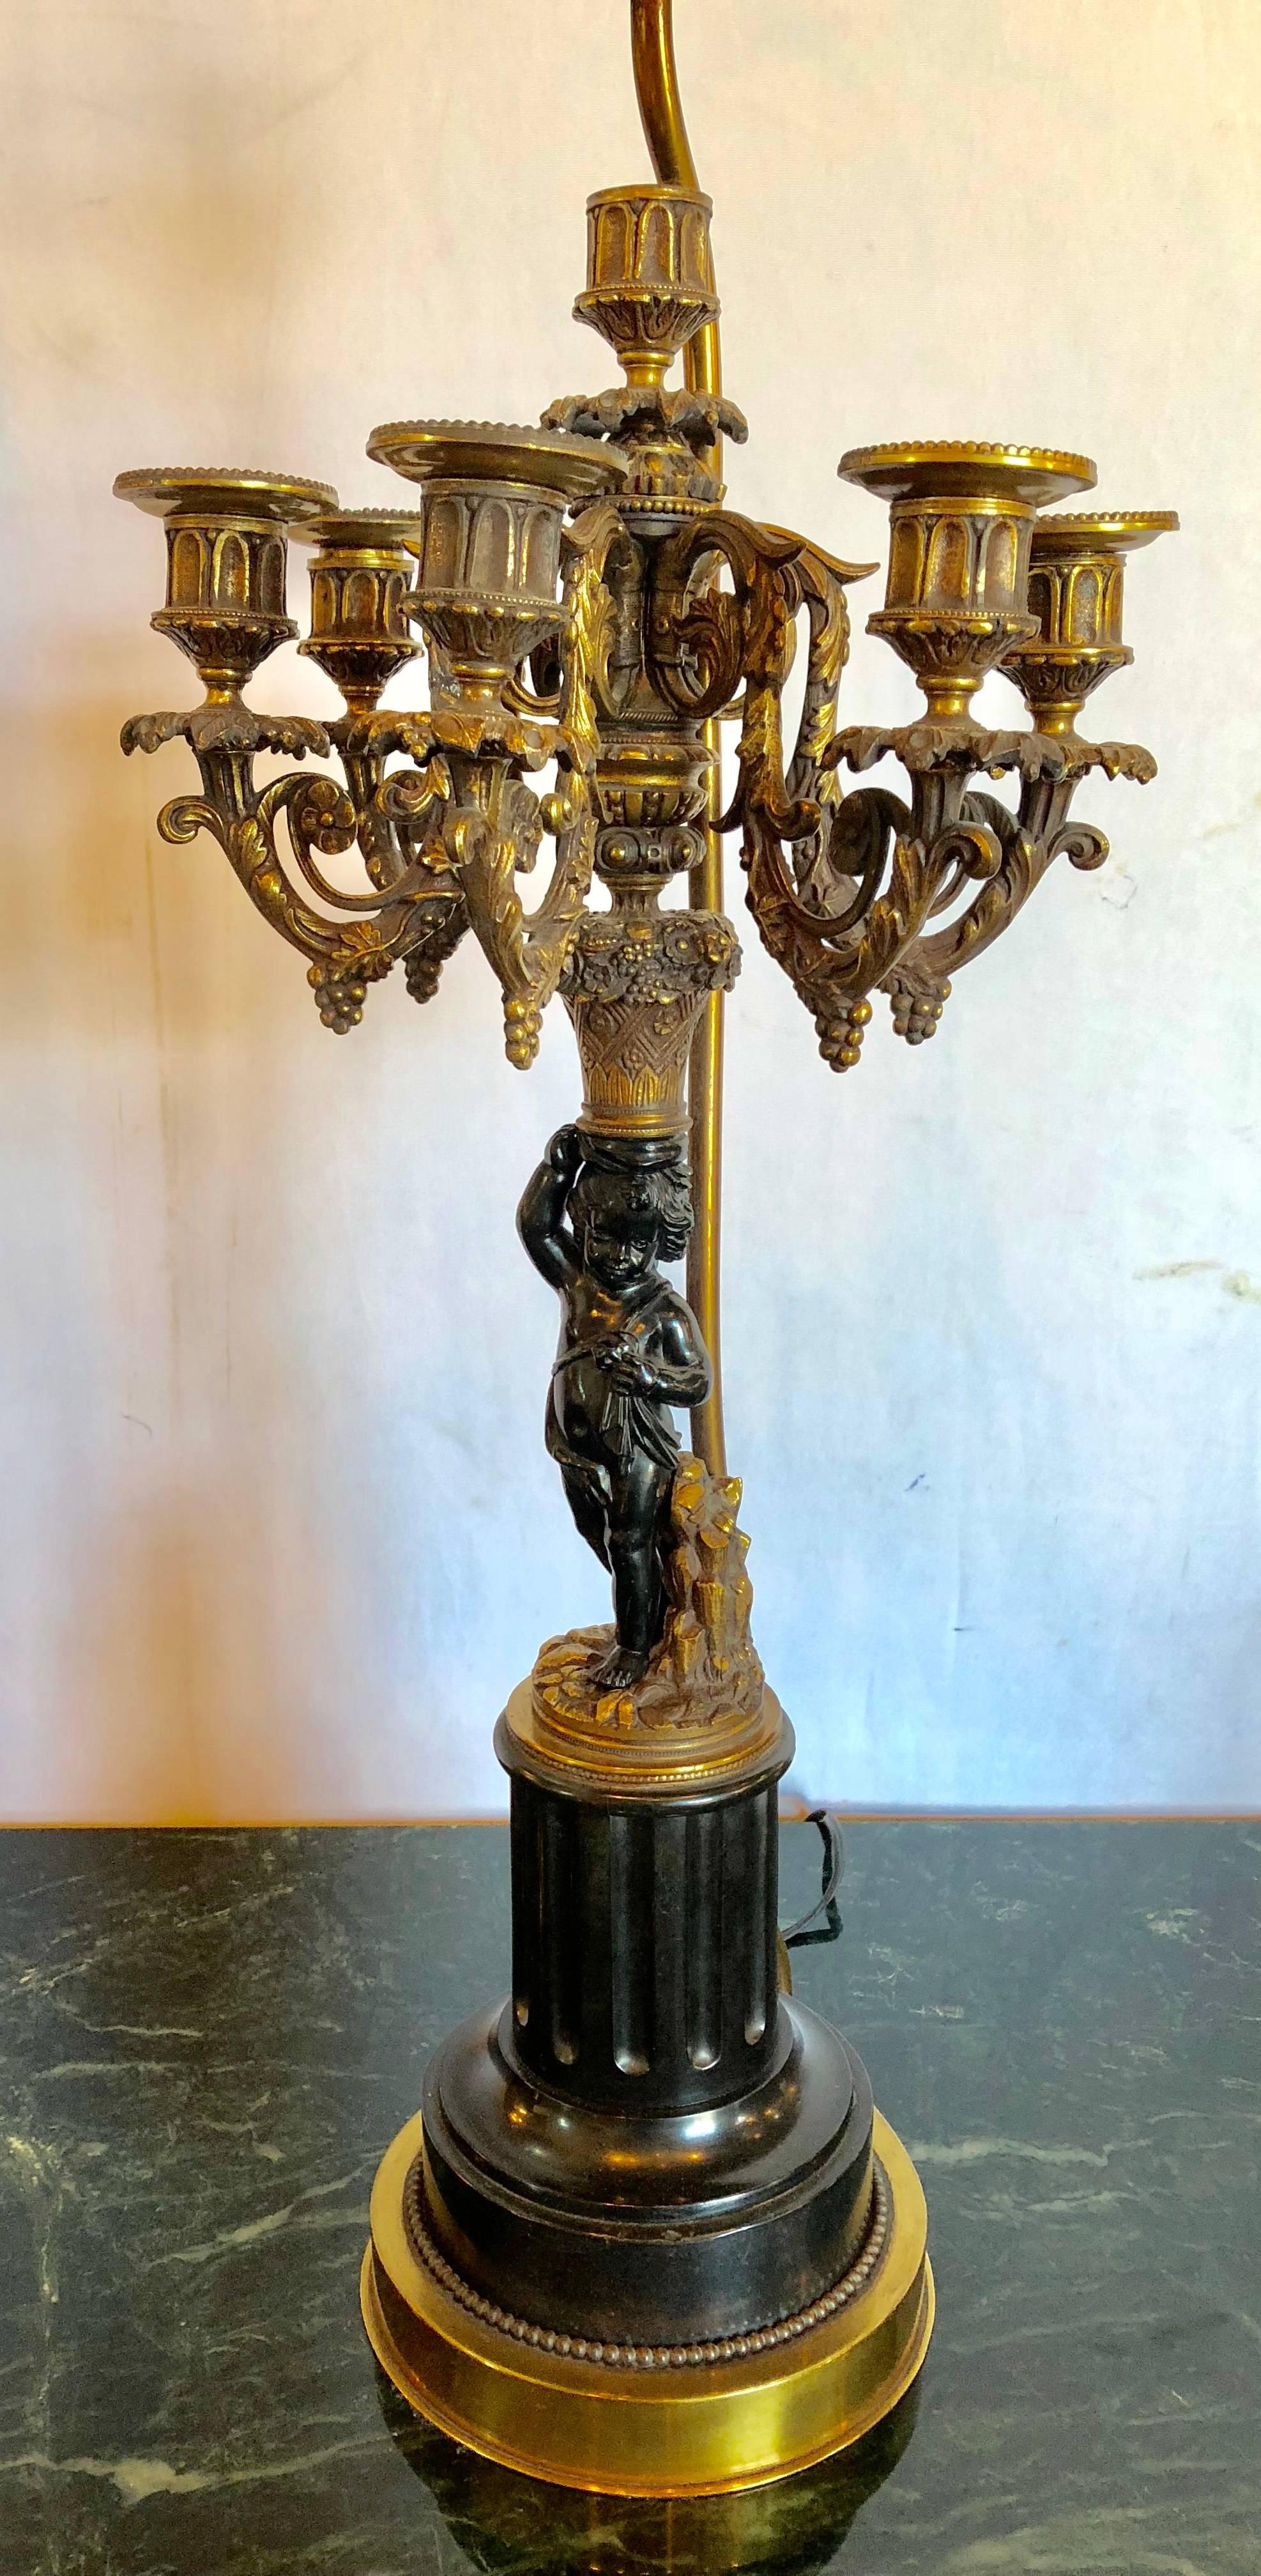 Une paire de candélabres chérubins en bronze patiné de la fin du 19e siècle sur des vases en marbre noir et des hauts et bas en dore ayant des abat-jour personnalisés. Le chérubin mesure 6,5